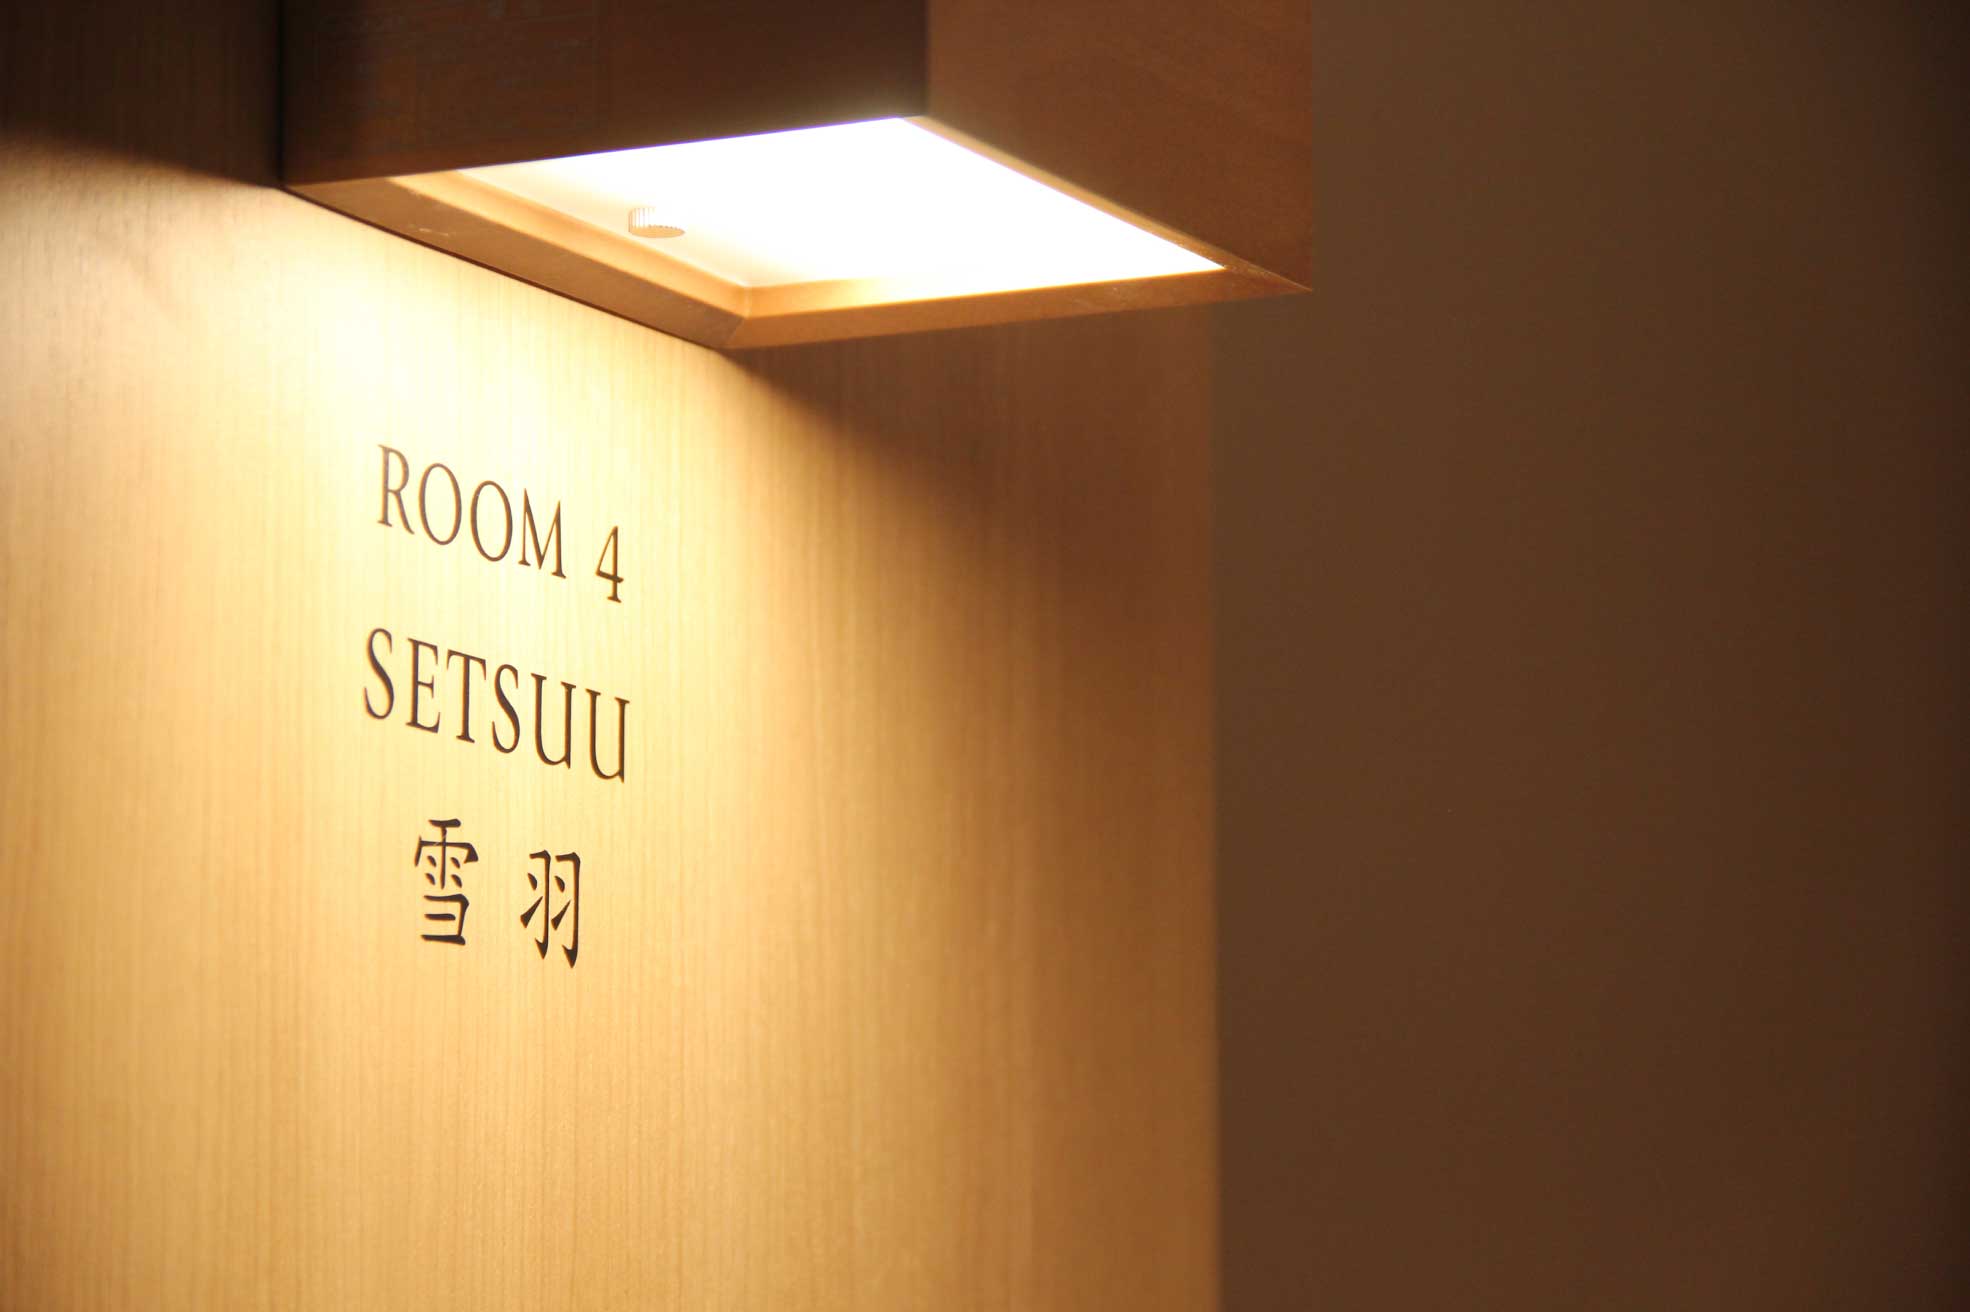 松江市にある「FUMAI sauna」の部屋名